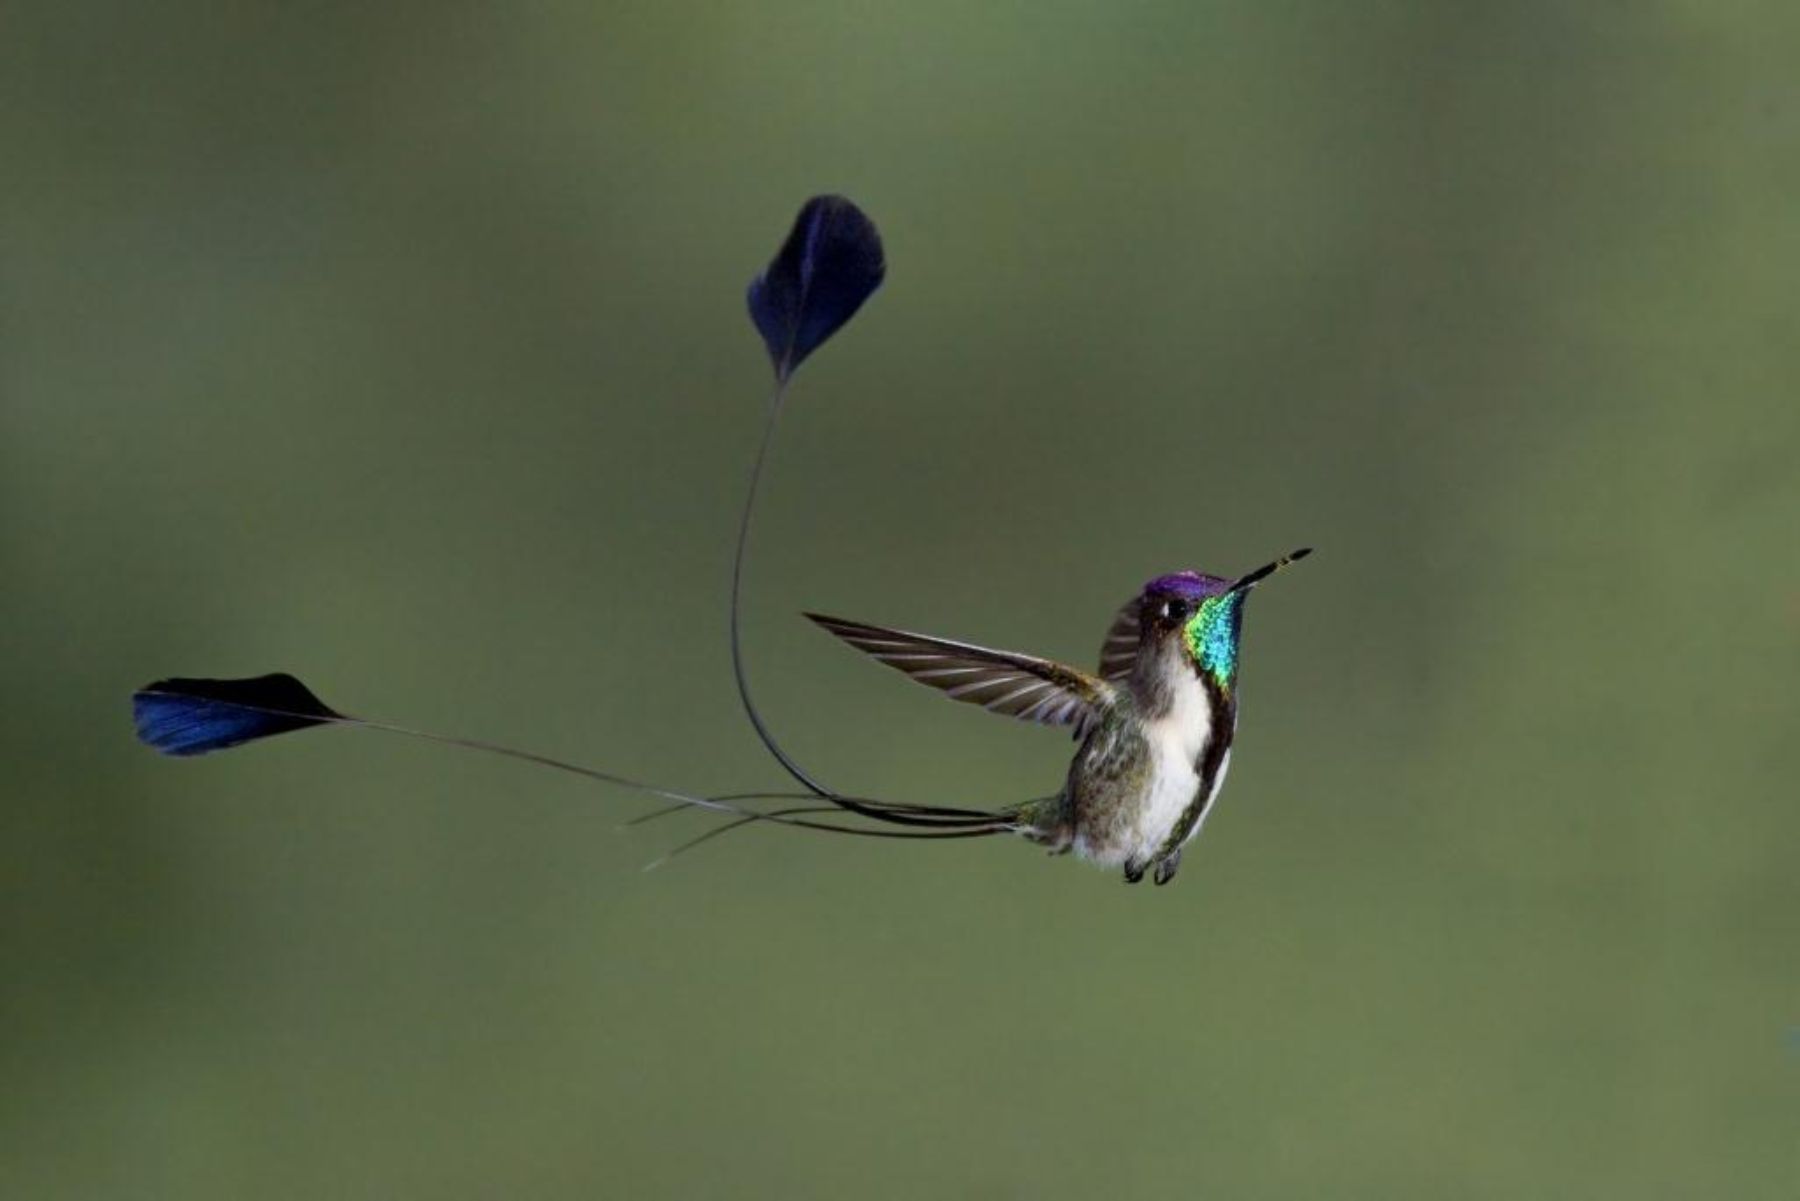 Colibrí cola de espátula (Marvelous spatuletail) es una de las aves endémicas del Perú. Se le puede observar en el bosque del valle de Utcubamba (región Amazonas), donde se extiende a elevaciones entre 2,000 y 2,900 metros sobre el nivel del mar. Cortesía